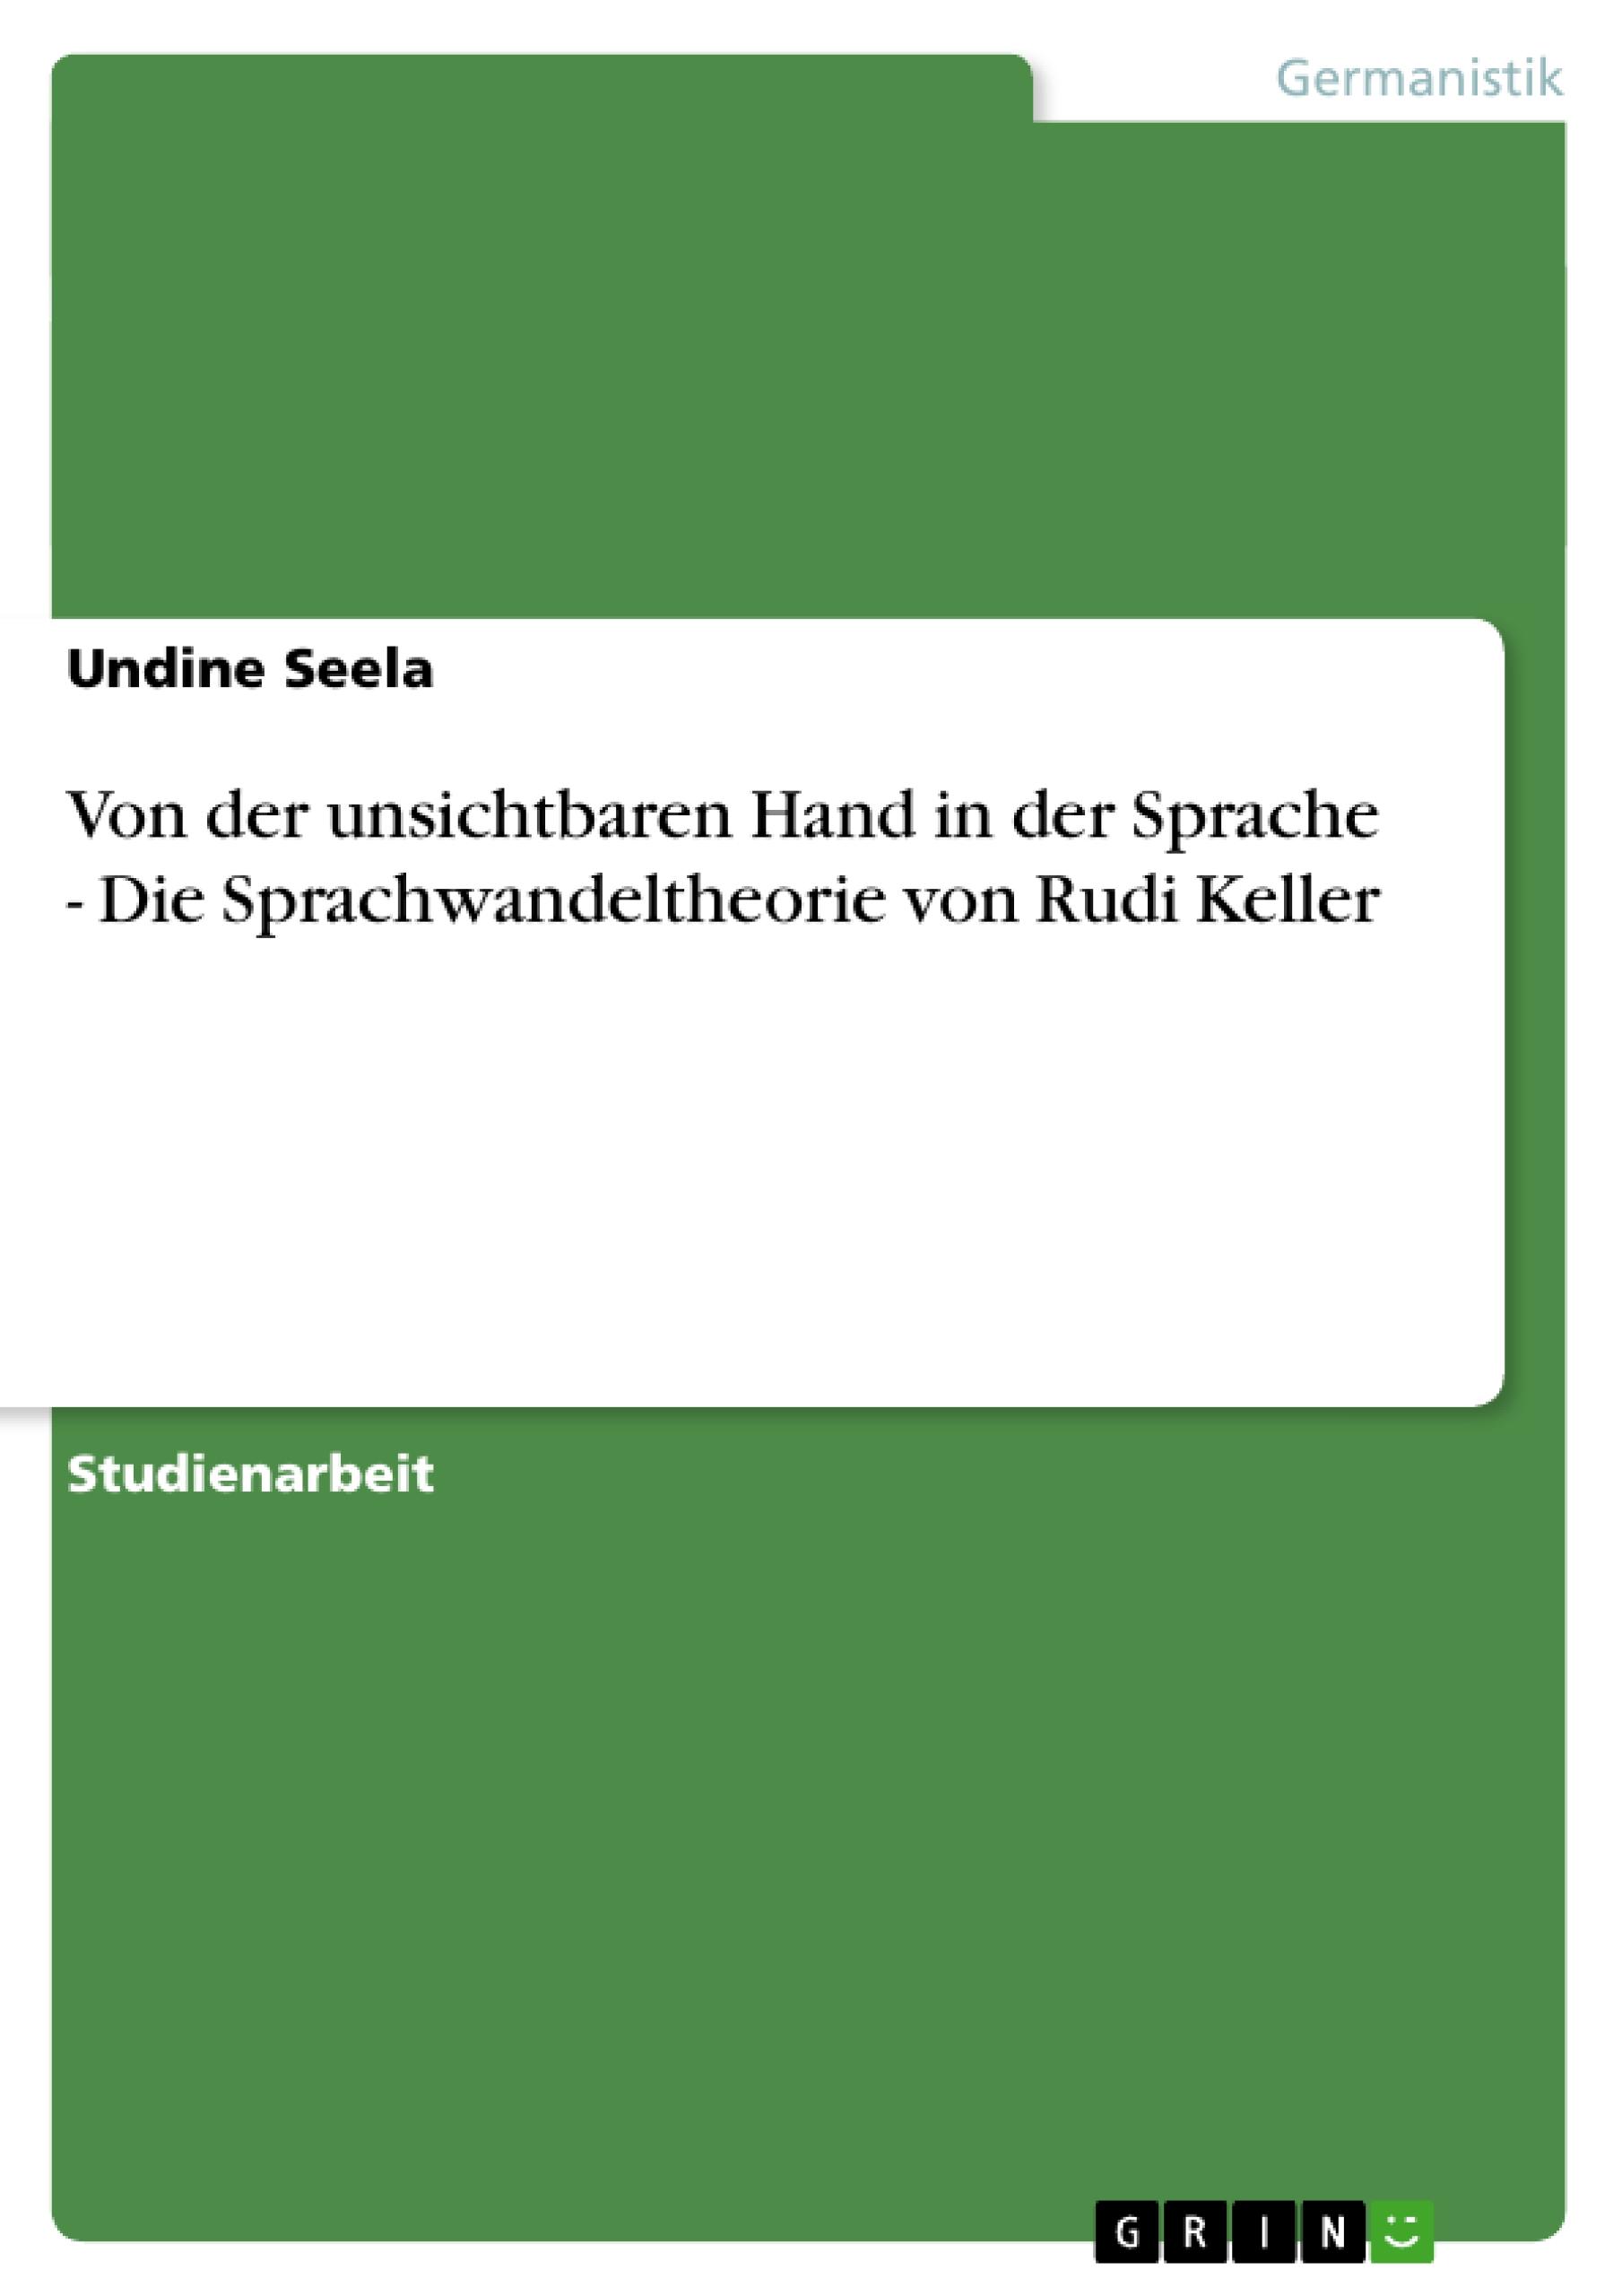 Von der unsichtbaren Hand in der Sprache - Die Sprachwandeltheorie von Rudi Keller / Undine Seela / Taschenbuch / Booklet / 20 S. / Deutsch / 2007 / GRIN Verlag / EAN 9783638789394 - Seela, Undine